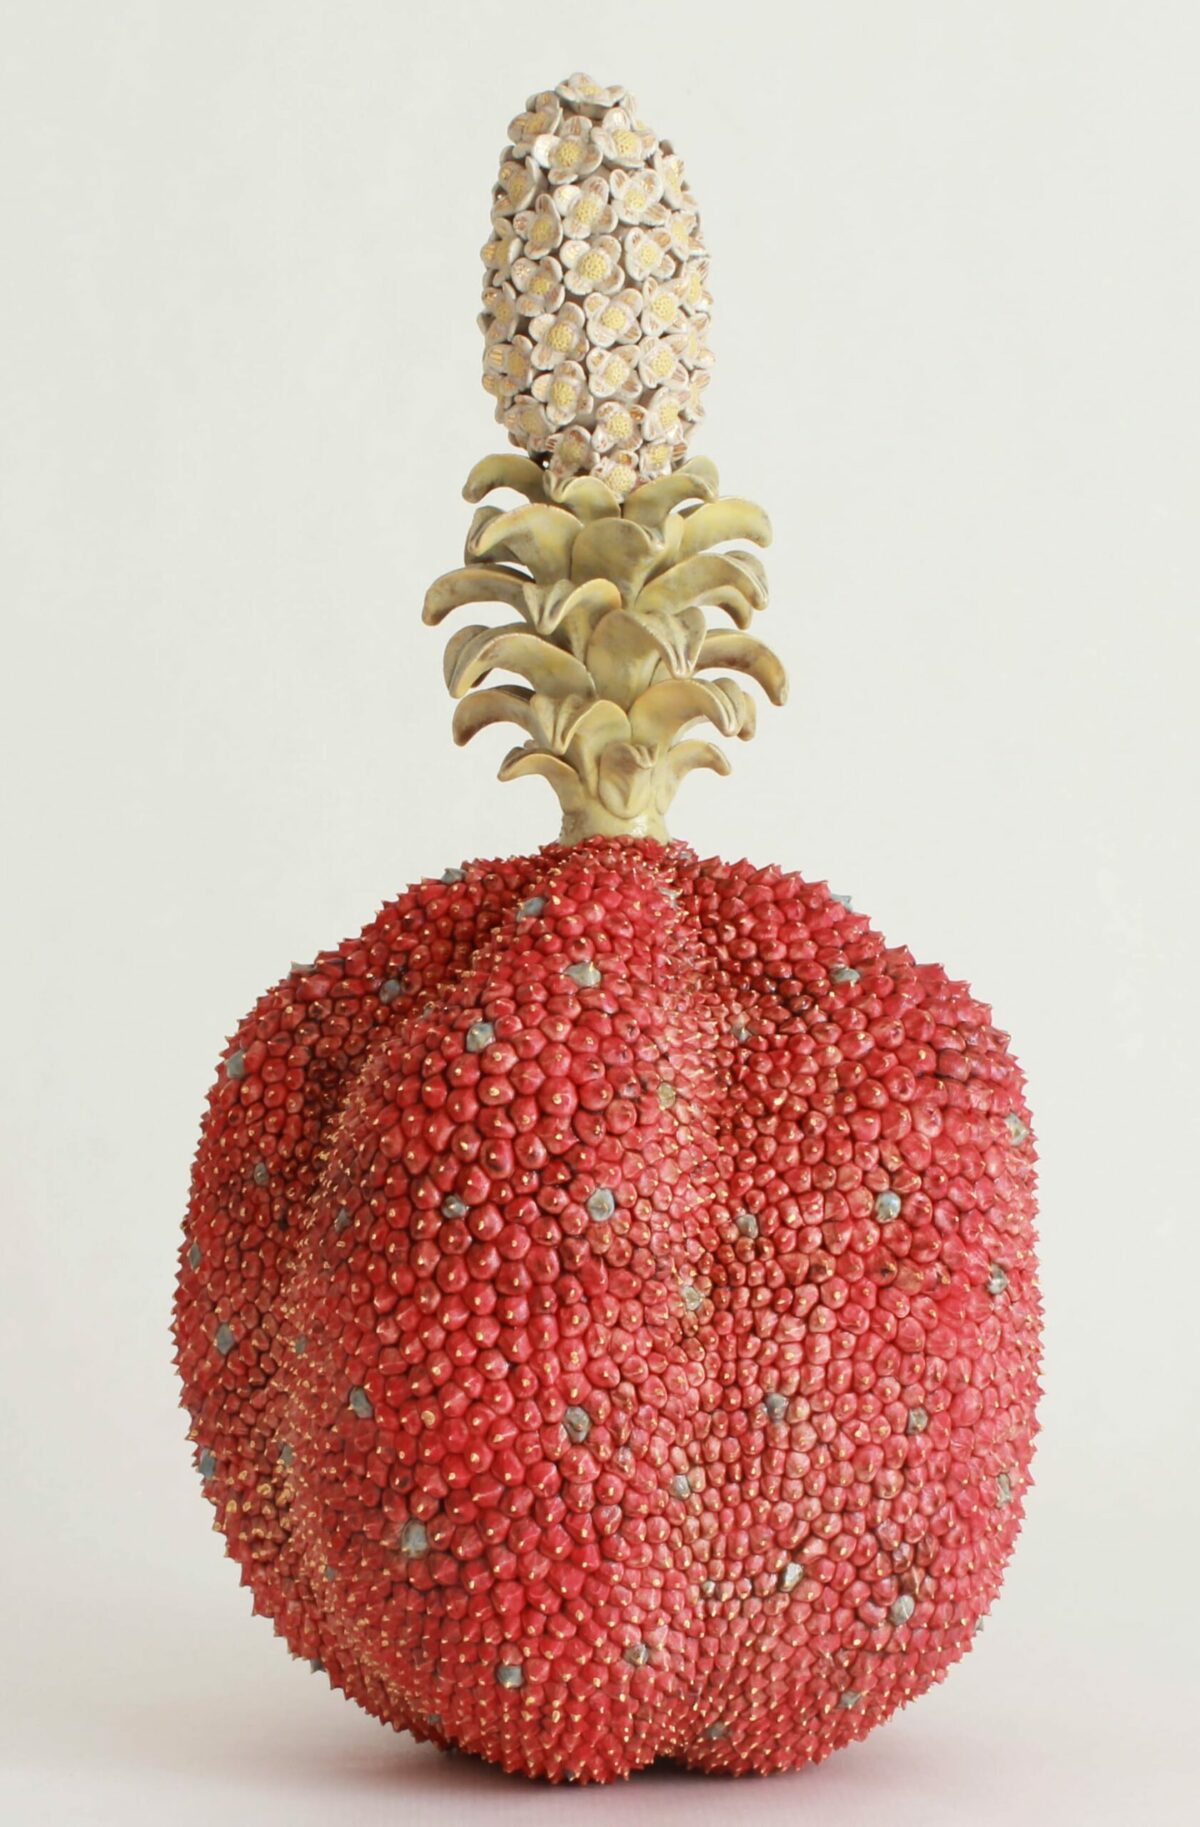 Otherworldly Fruits Fantastical Ceramic Sculptures By Kaori Kurihara 17